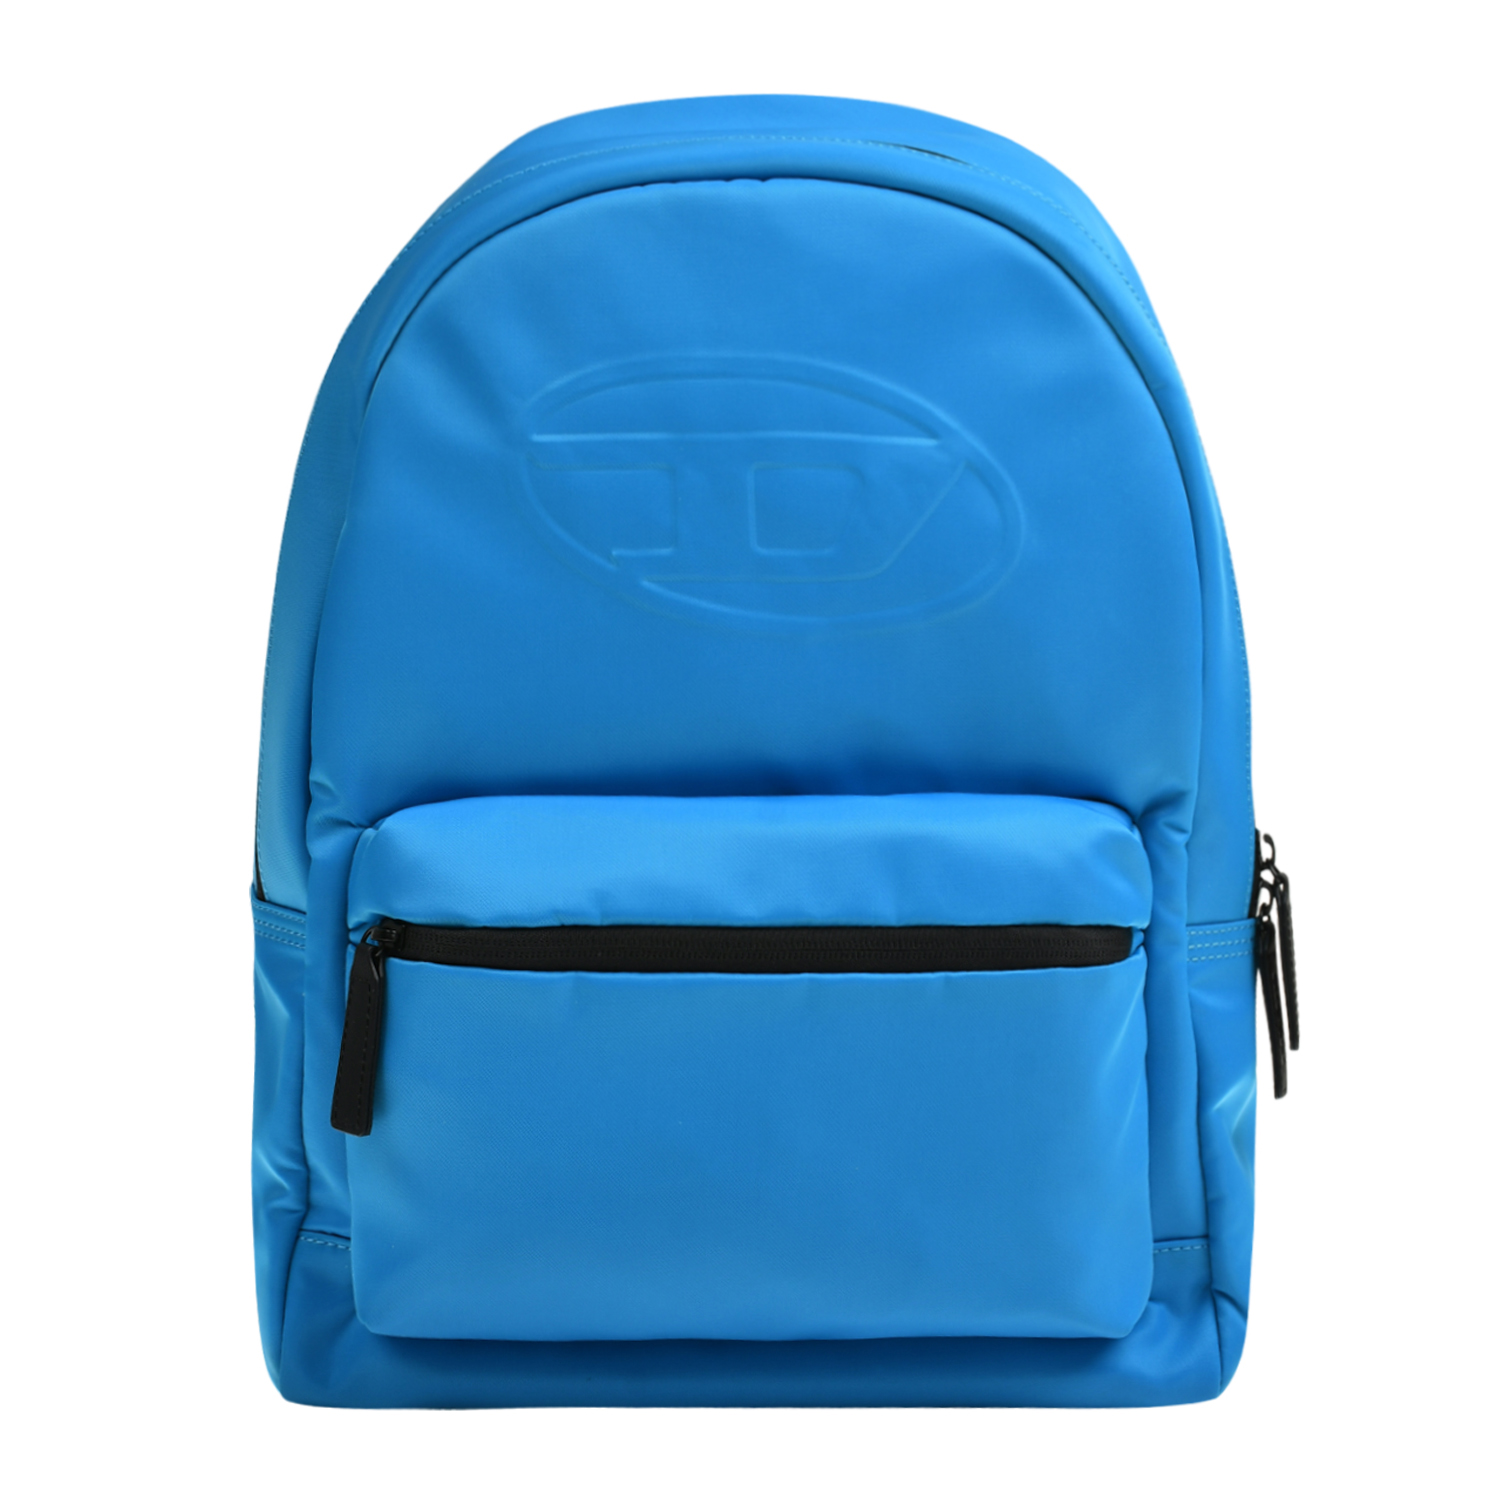 Рюкзак с лого в тон, синий Diesel, размер unica